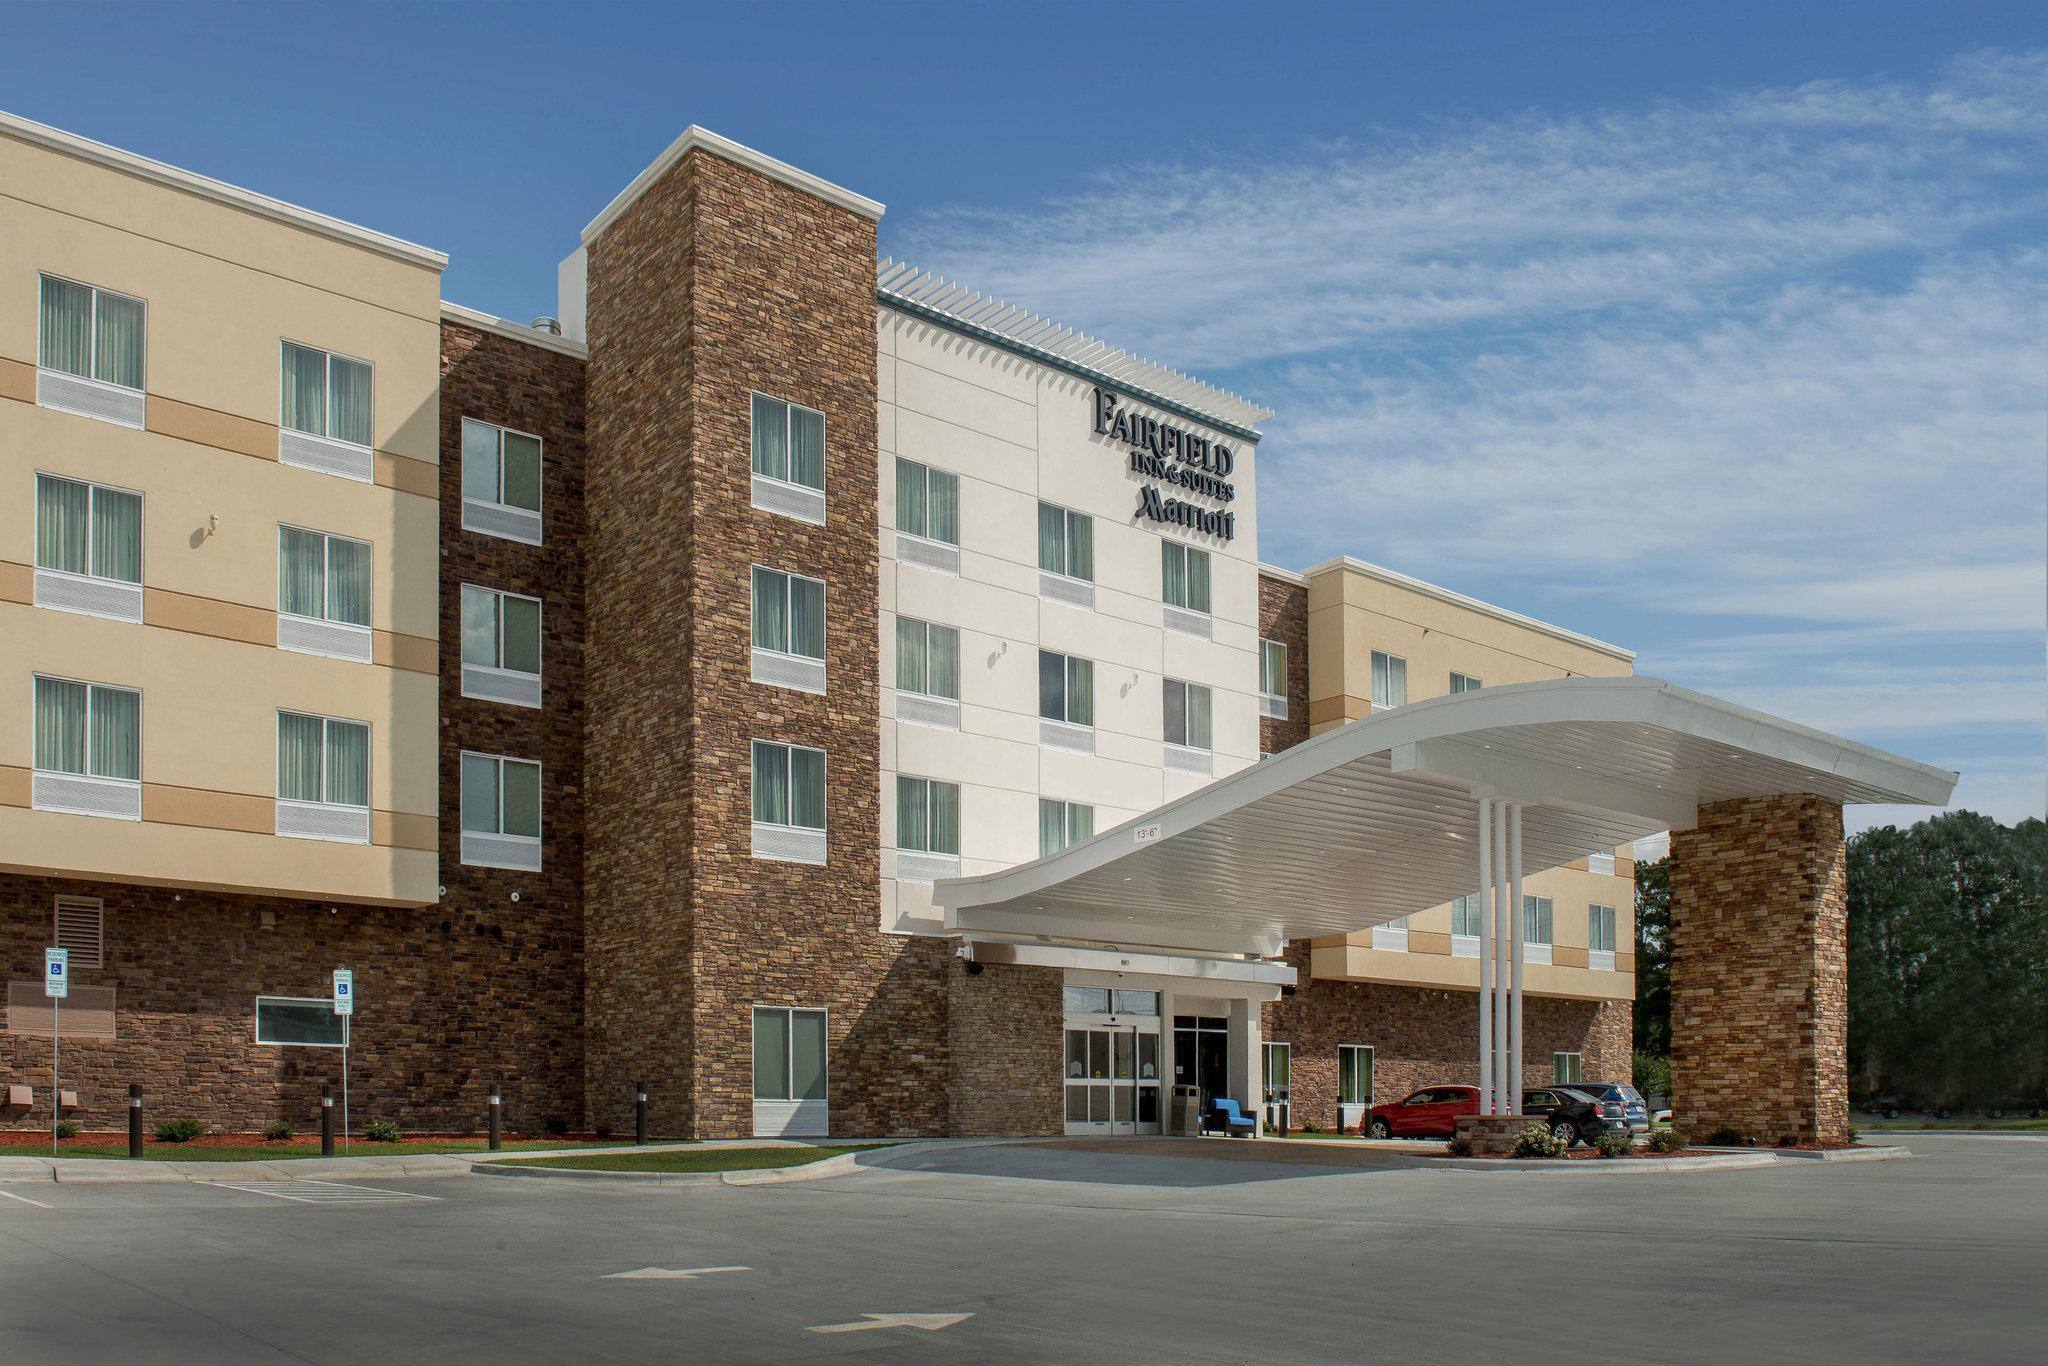 Fairfield Inn & Suites Washington - Waszyngton